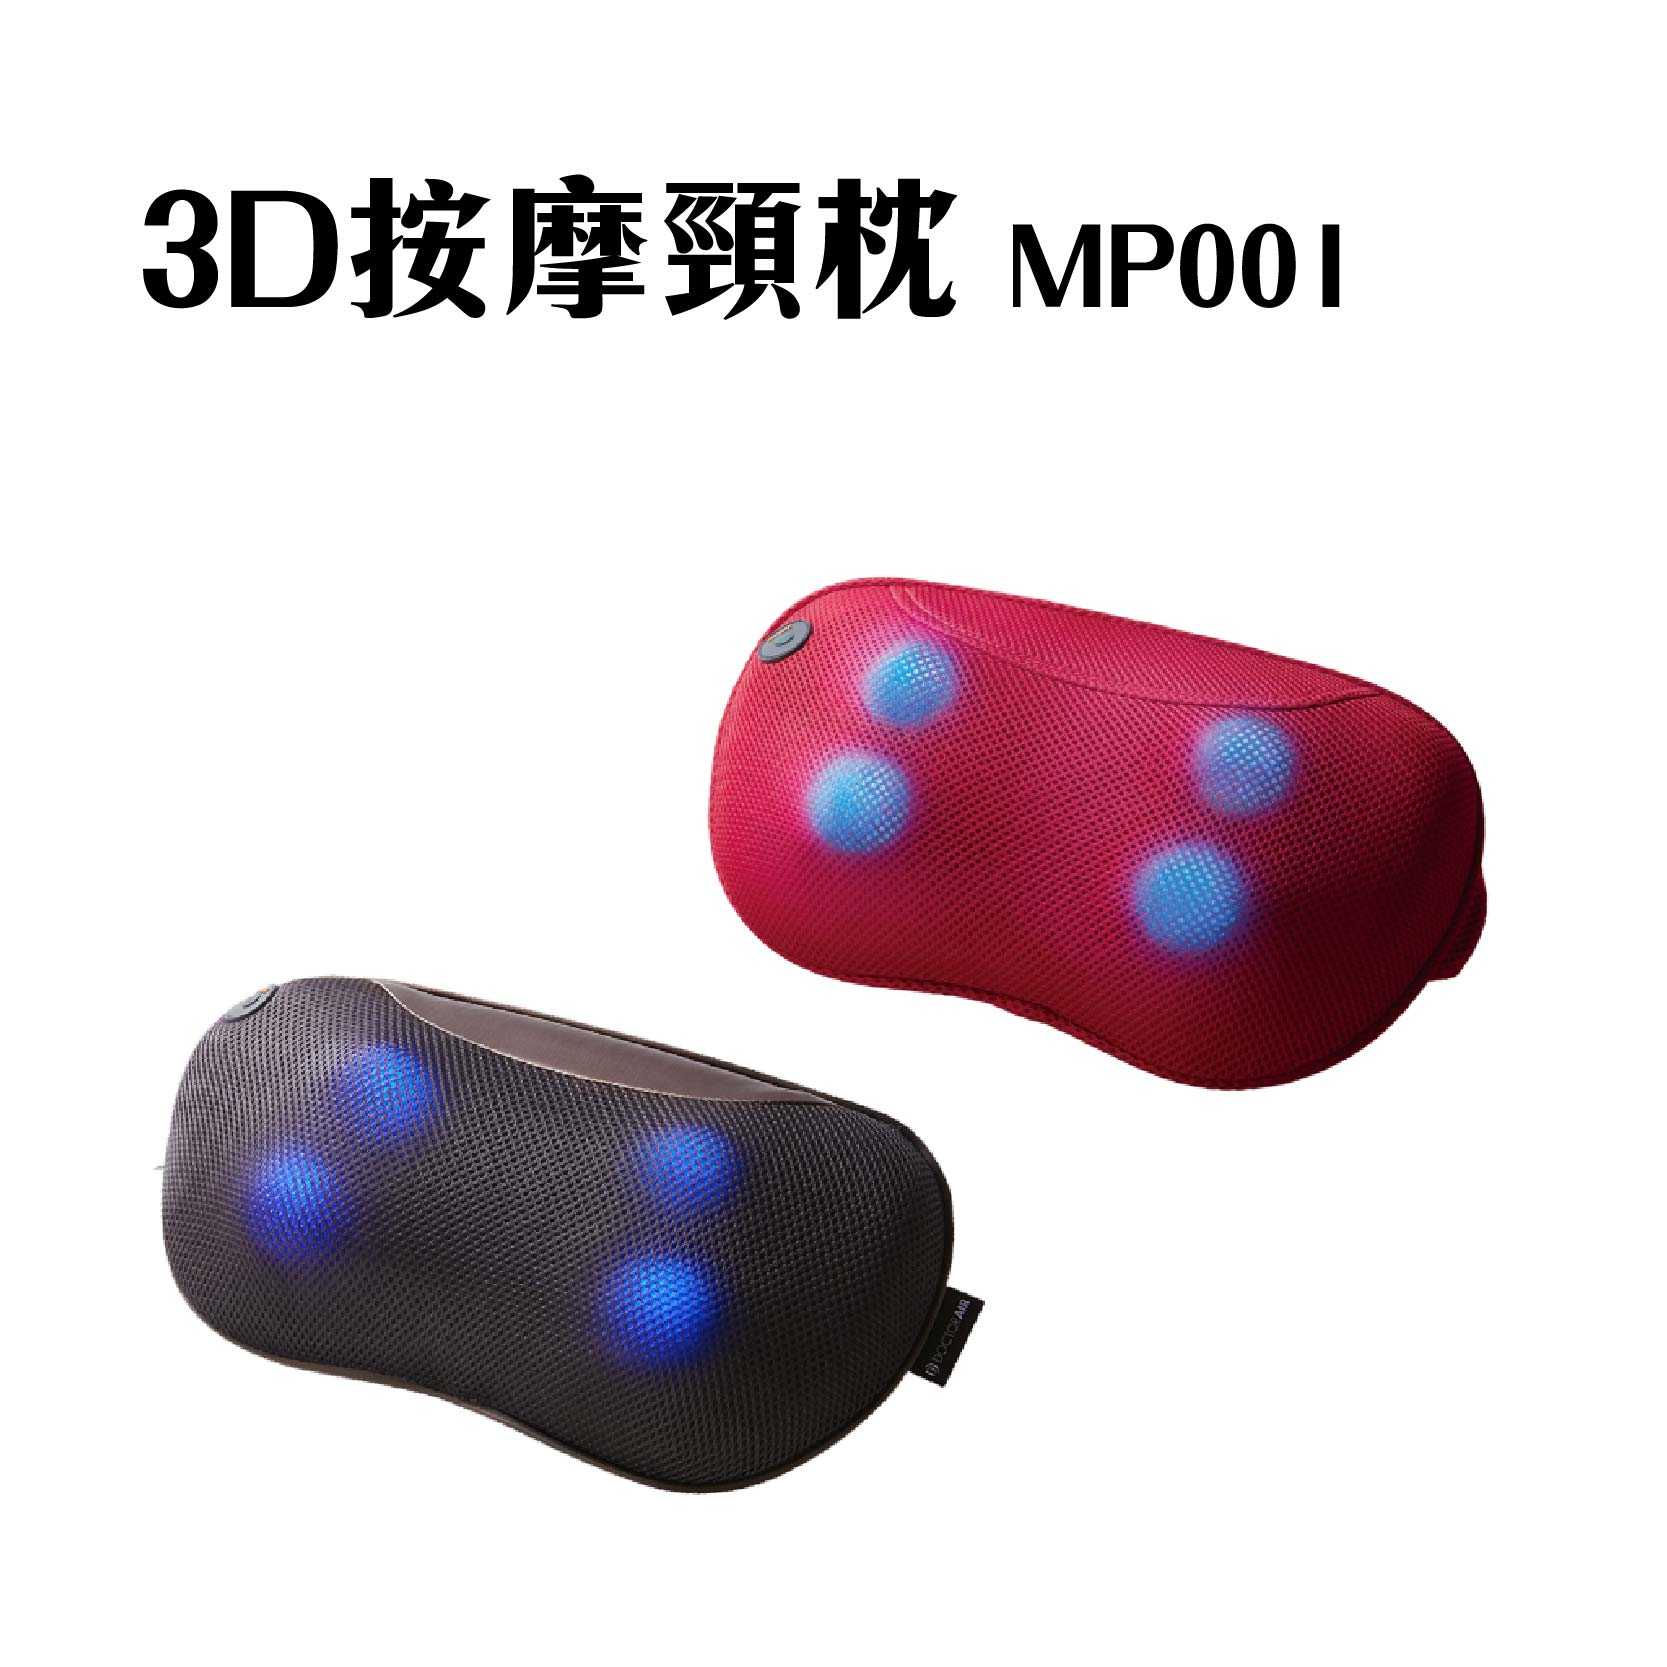 現貨 『3D按摩頸枕 單機 MP001』全新公司貨 紅 棕 按摩枕 車用按摩 頸枕 DOCTOR AIR